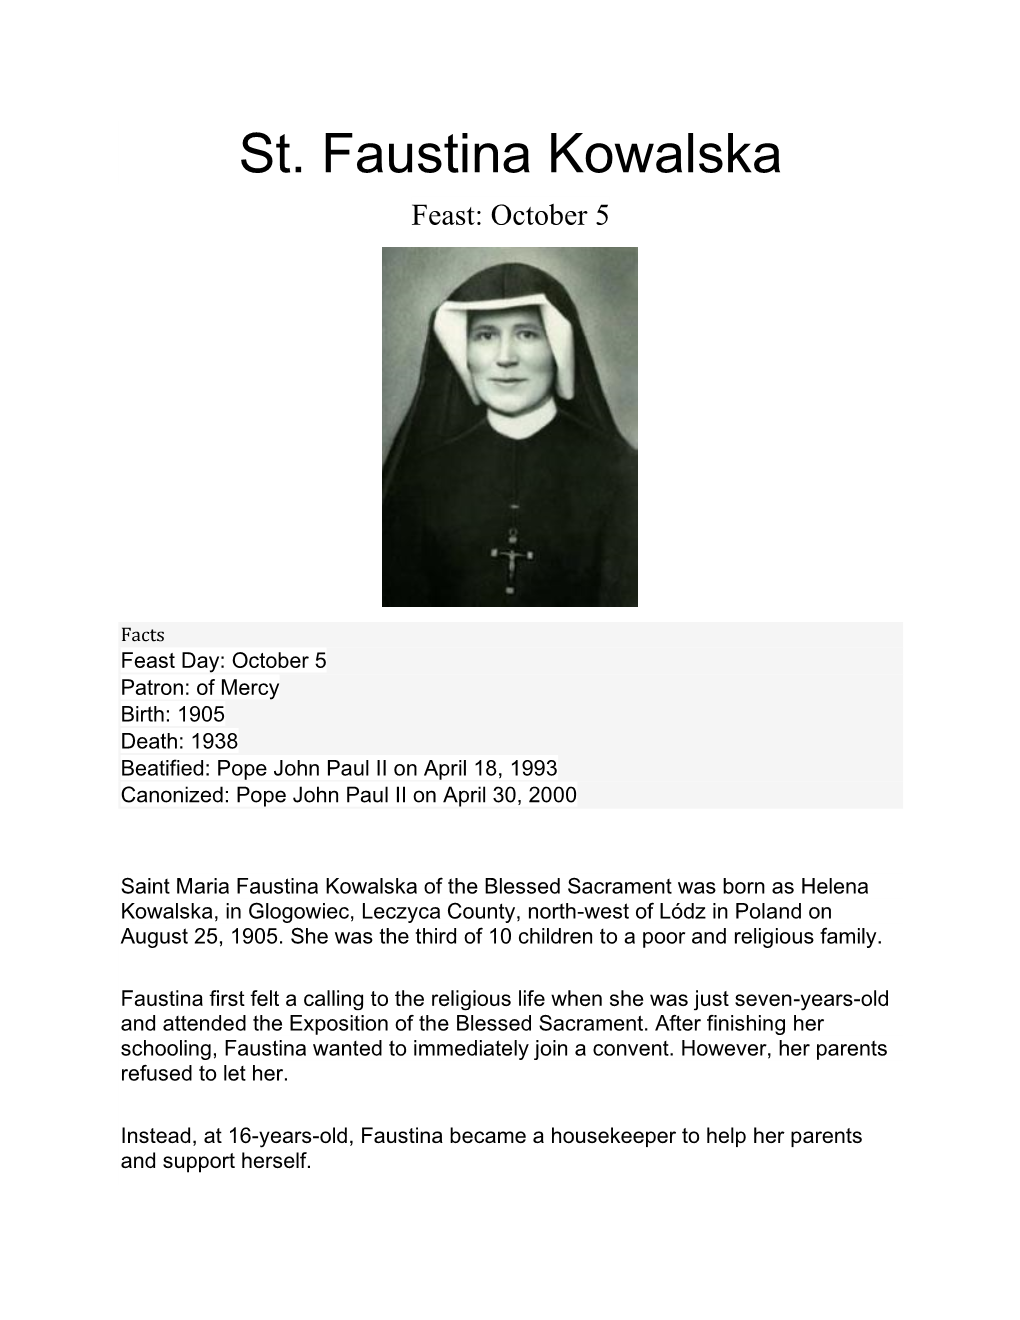 St. Faustina Kowalska Feast: October 5